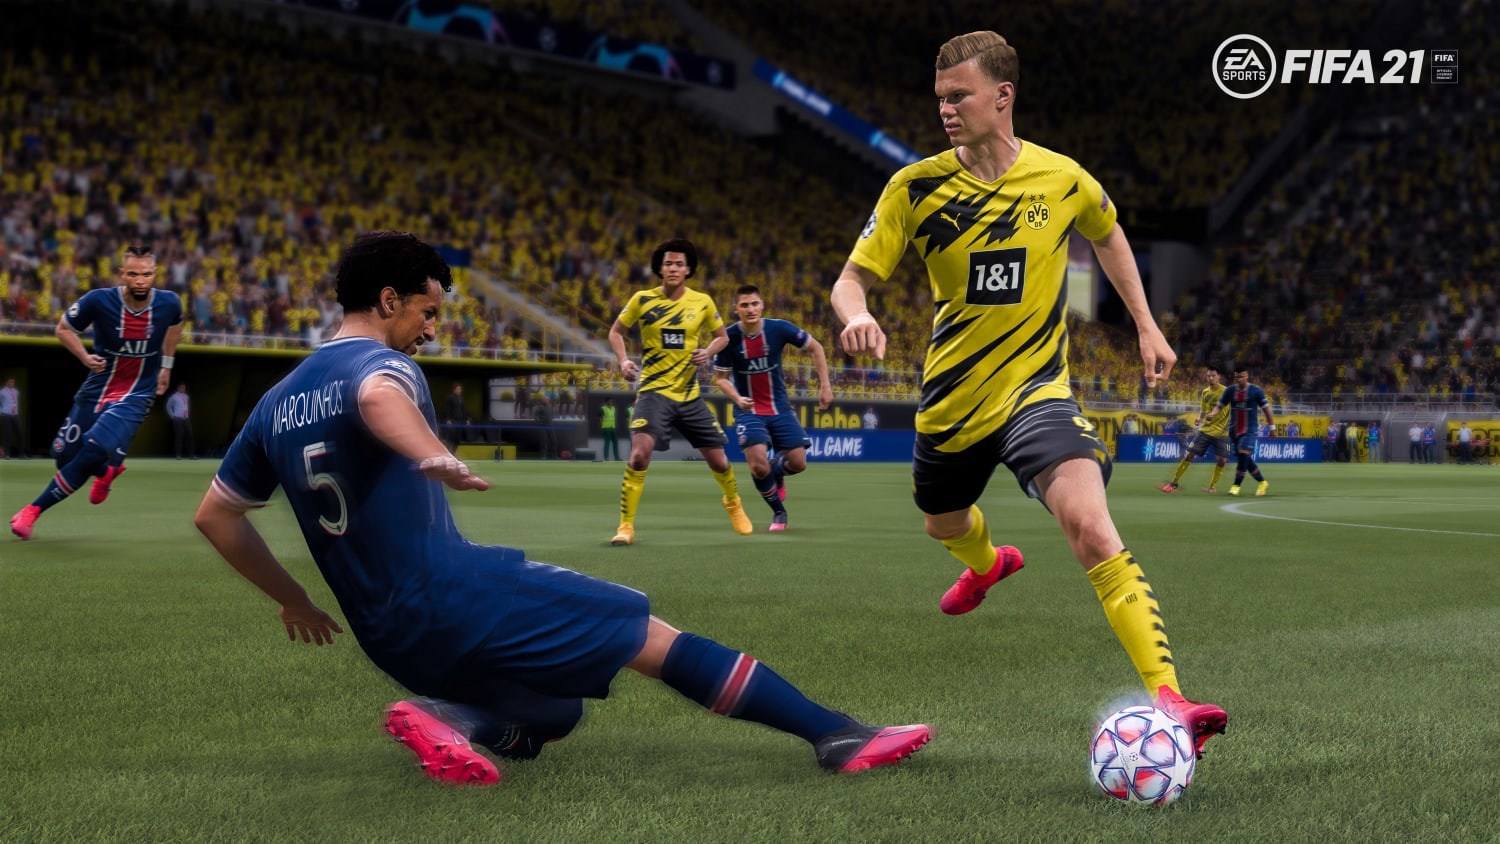 FIFA 21'in PS5 ve Xbox Series versiyonundan ilk görüntüler paylaşıldı